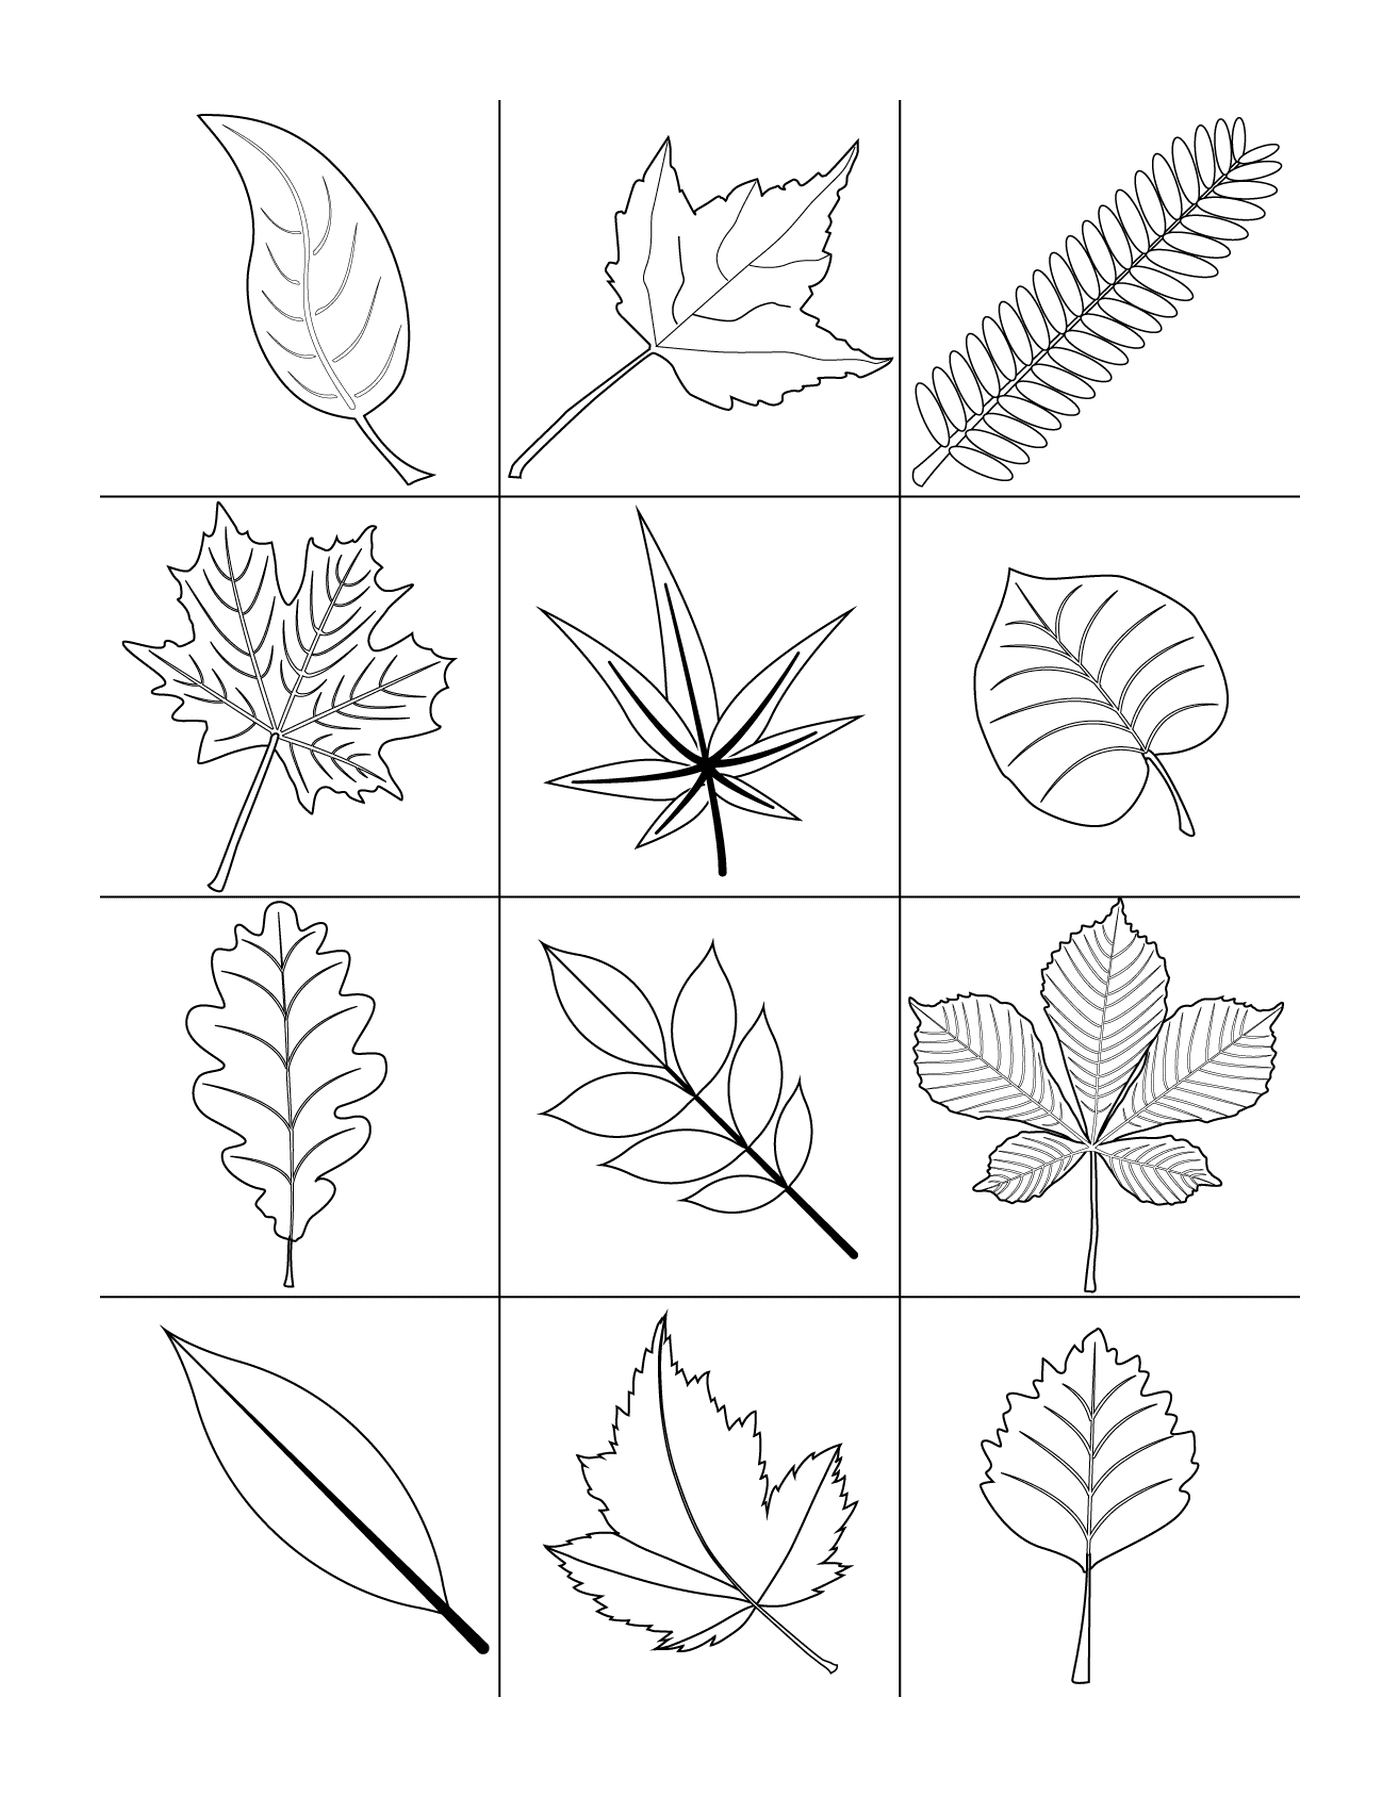   Douze feuilles dessinées 